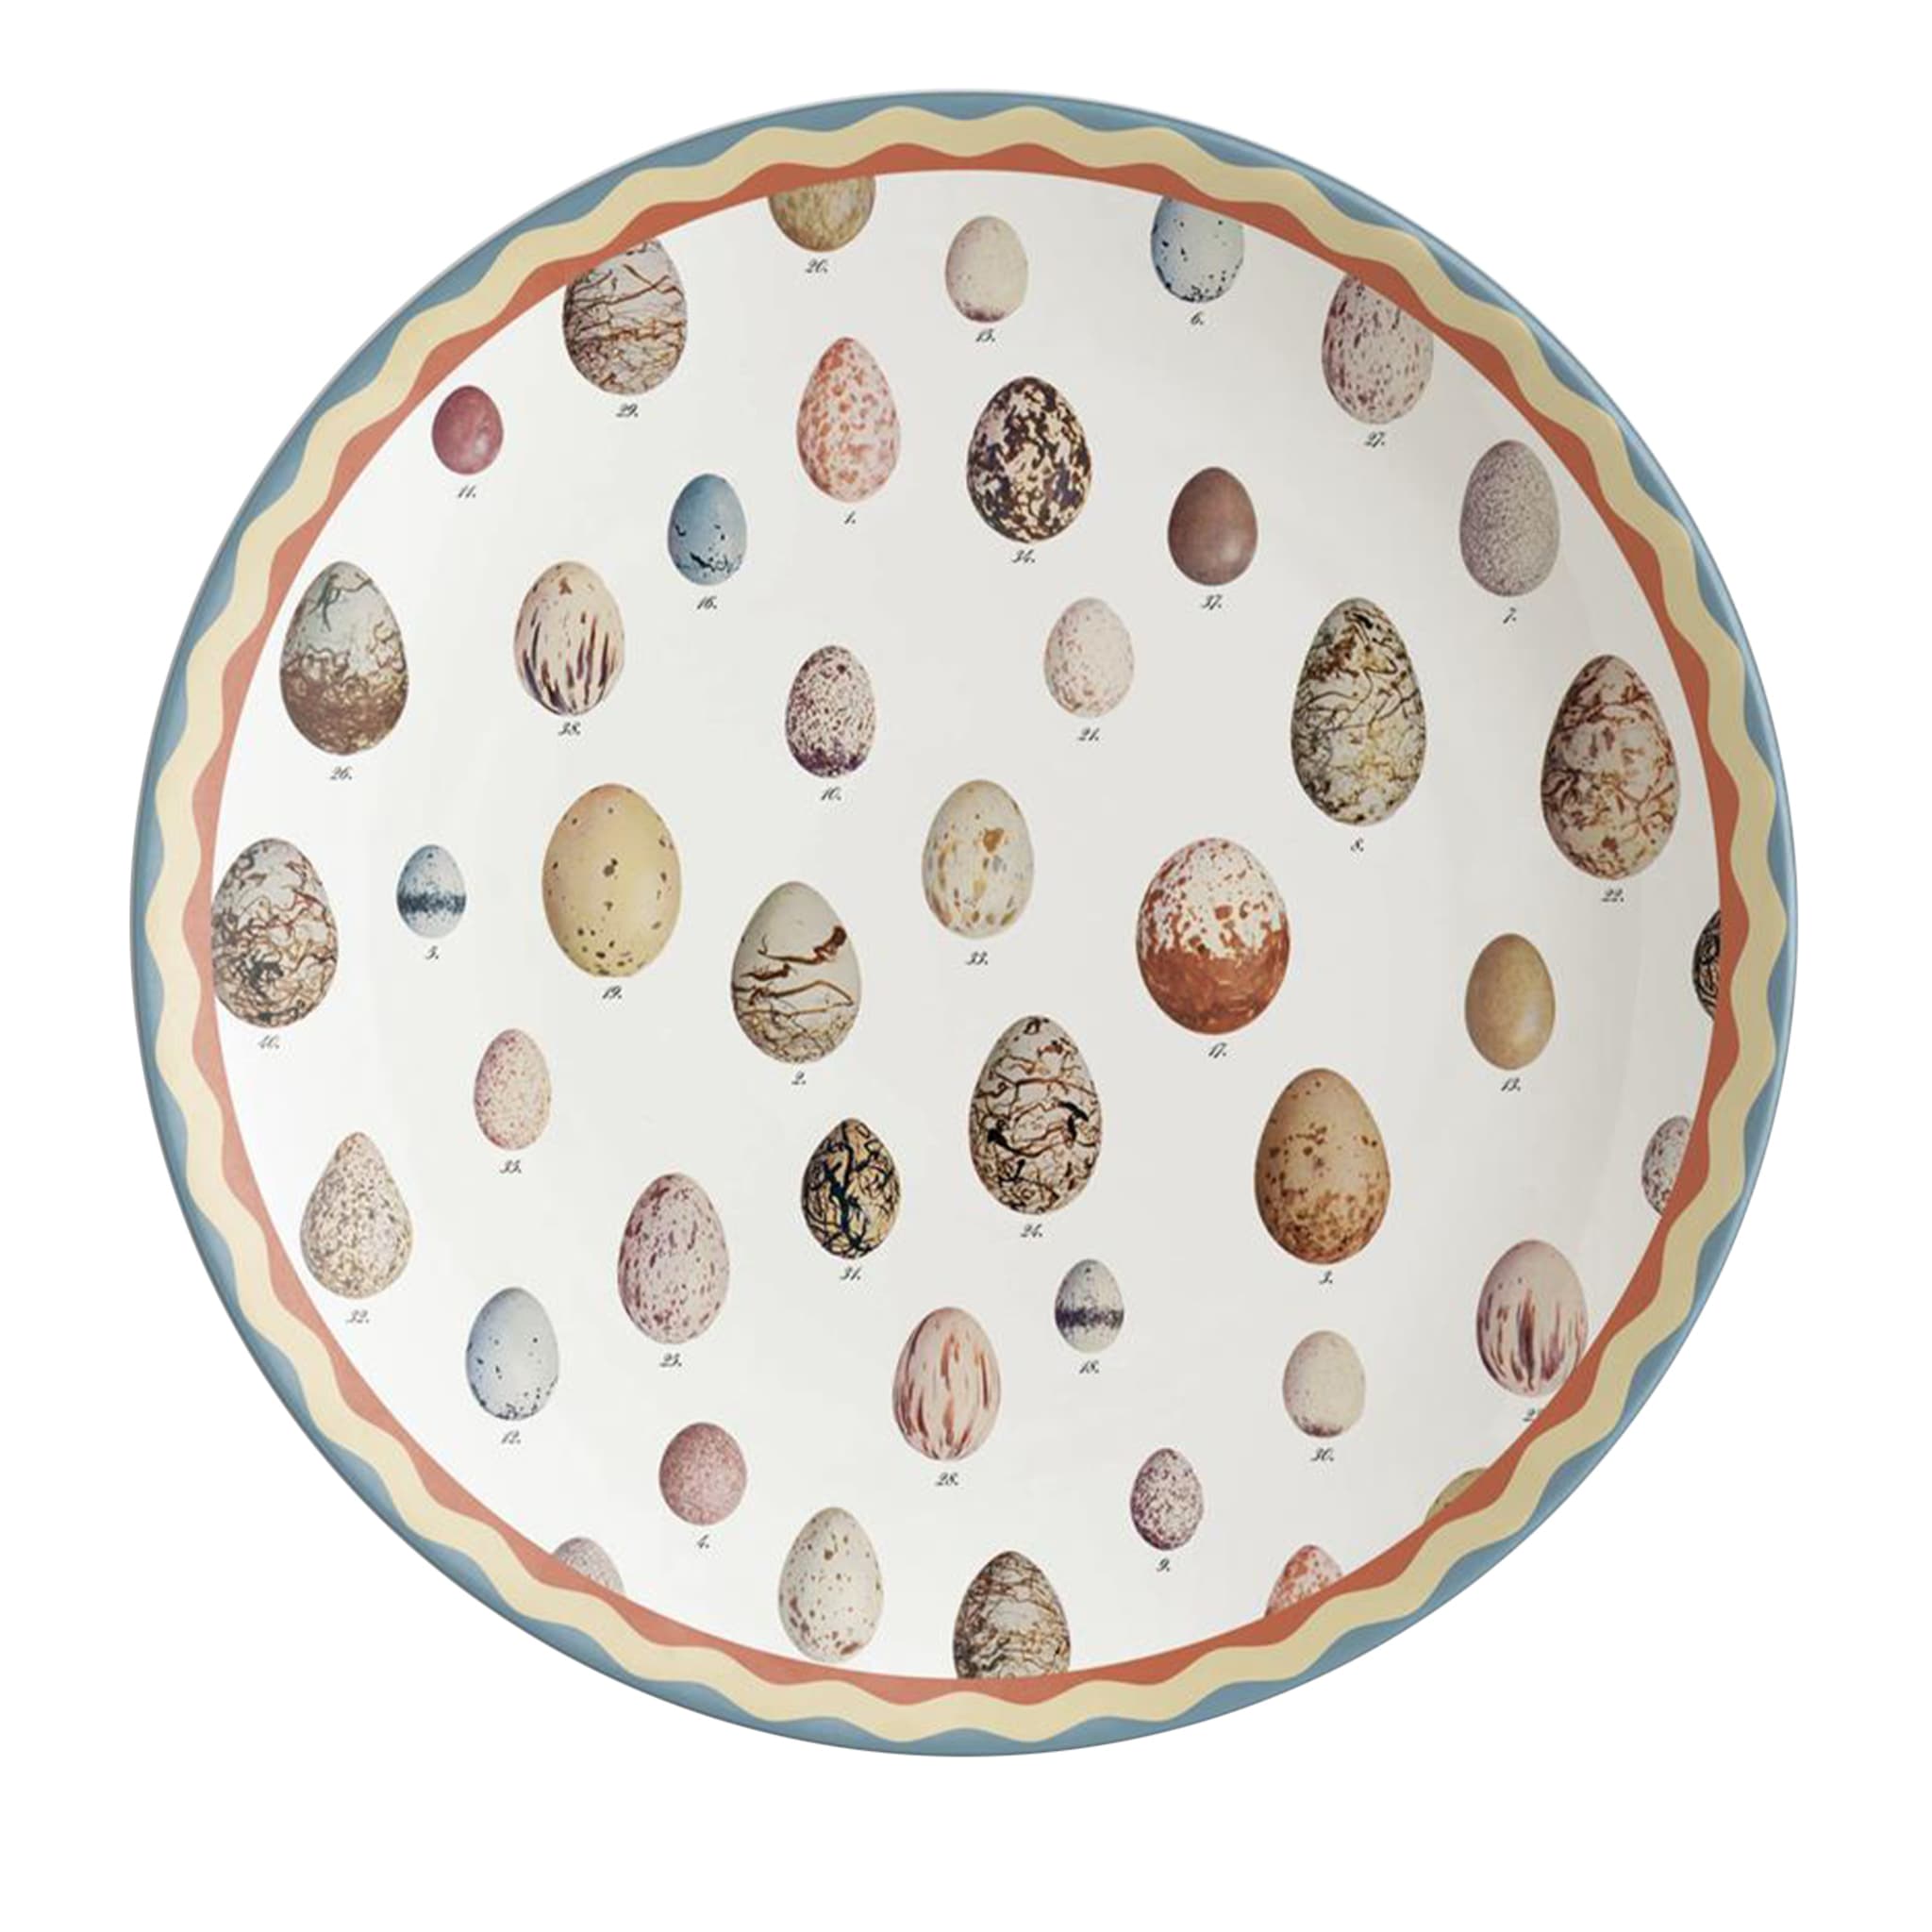 Cabinet de Curiosités Eggs Charger Plate - Main view